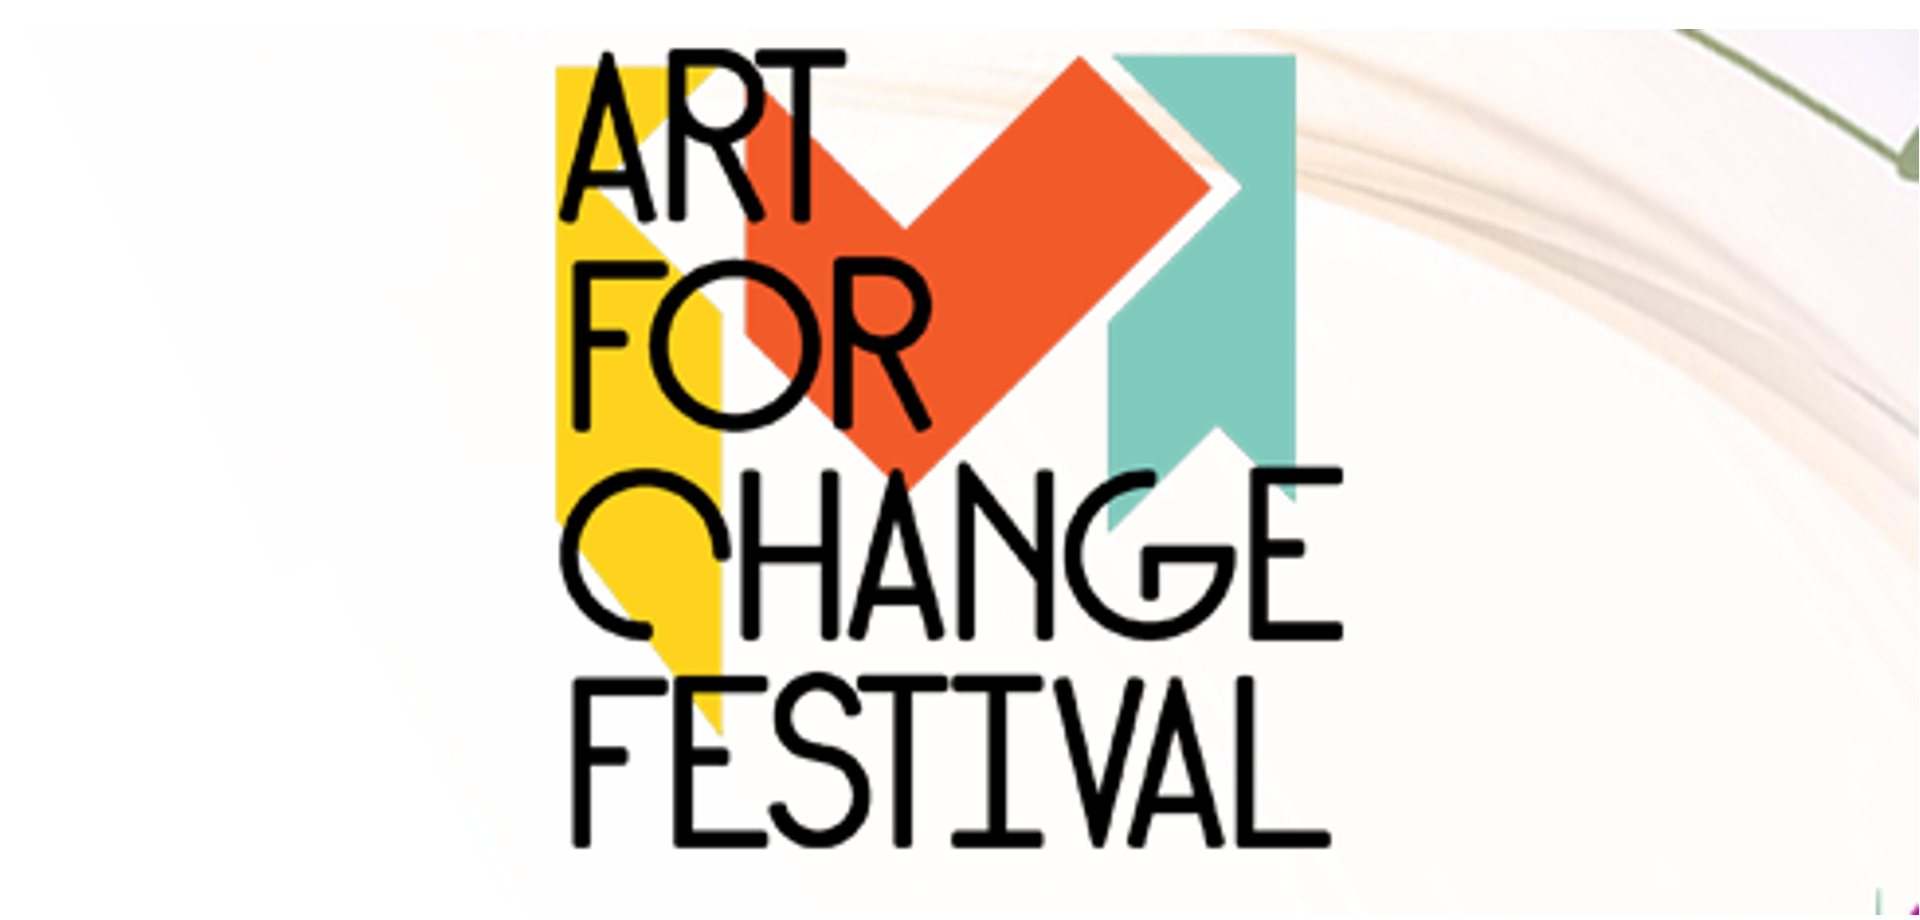 Art for Change Festival